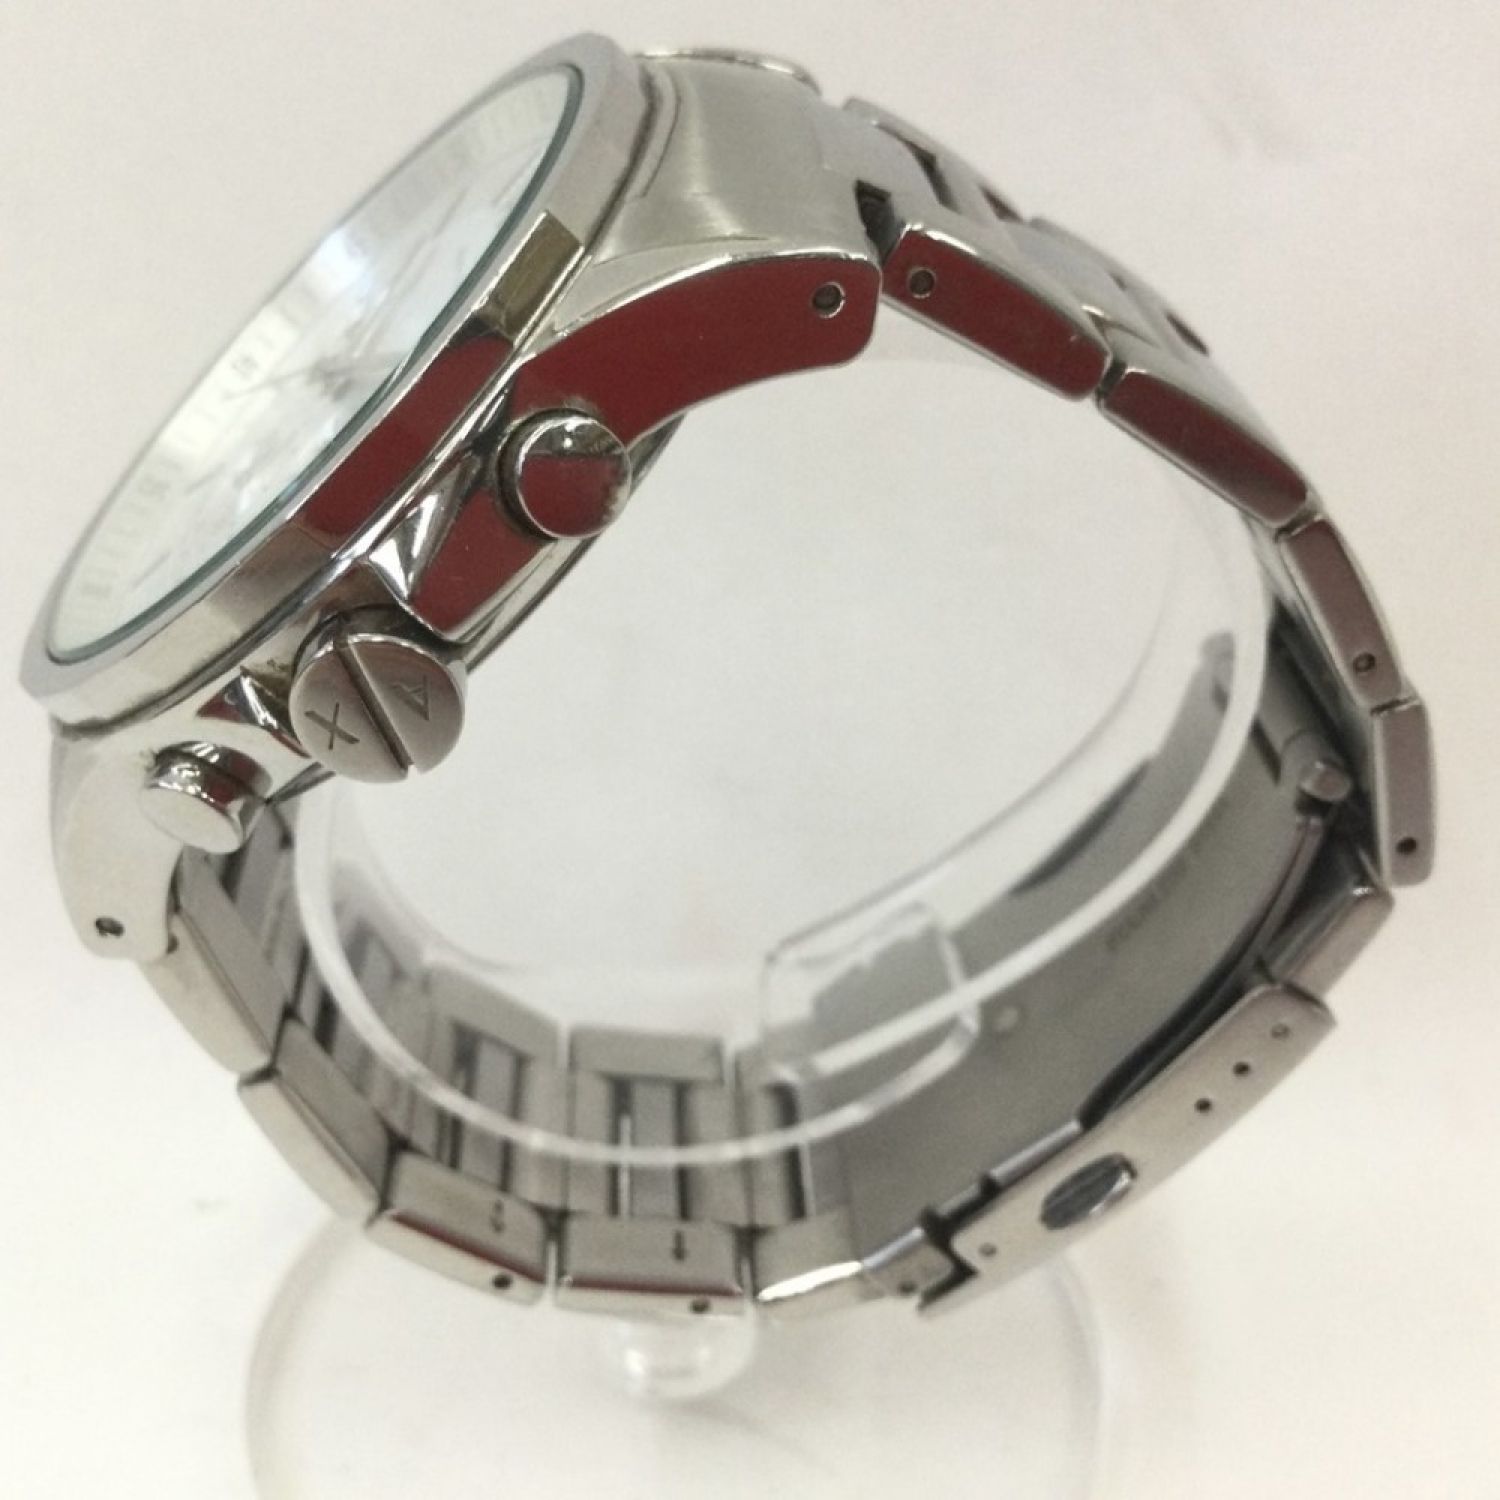 〇〇 ARMANI EXCHANGE アルマーニ・エクスチェンジ 腕時計 AX2058 